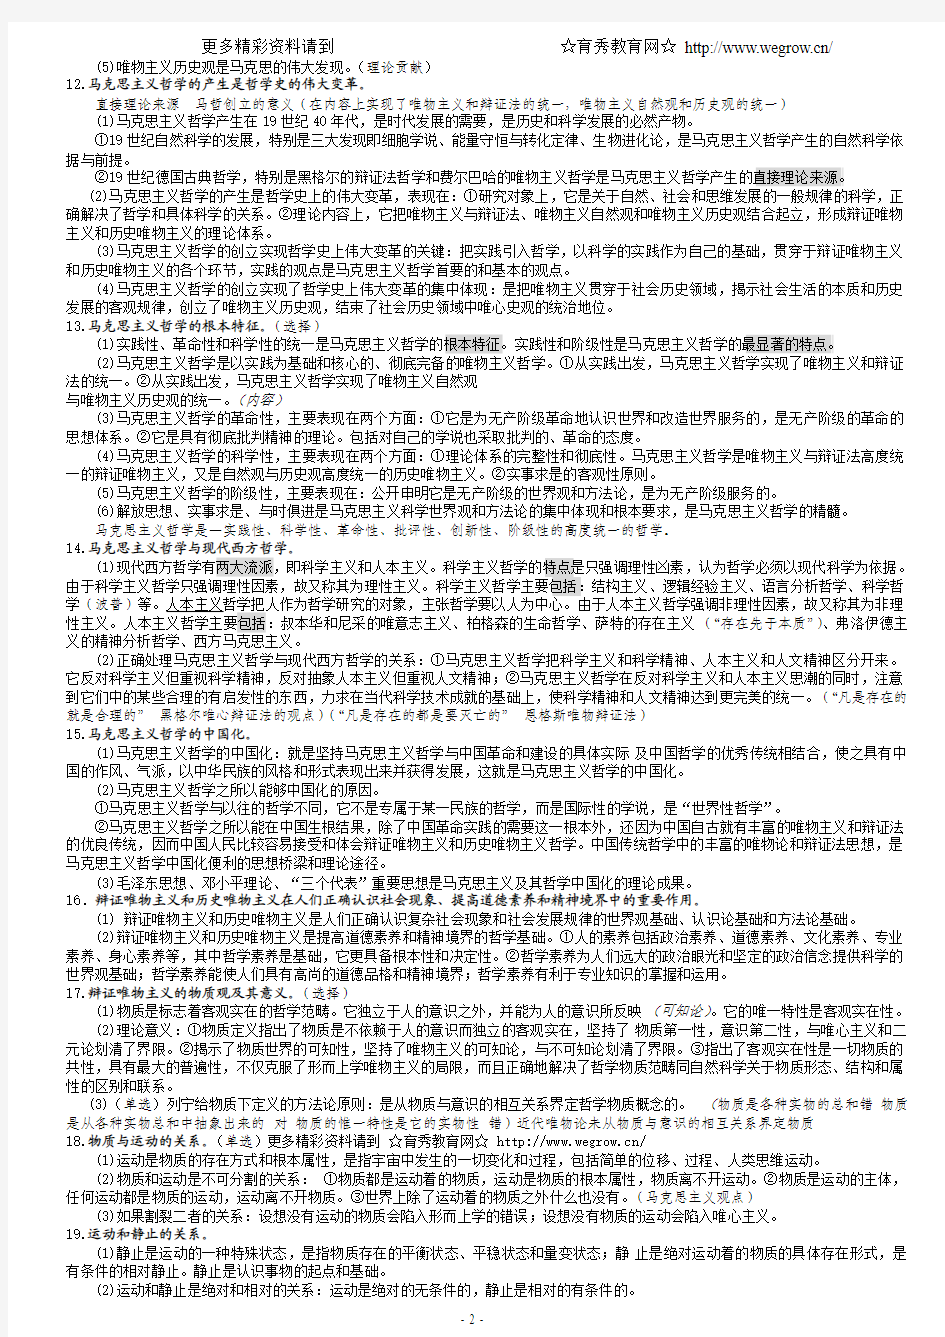 [280KB]2008年张俊芳考研哲学上海站笔记